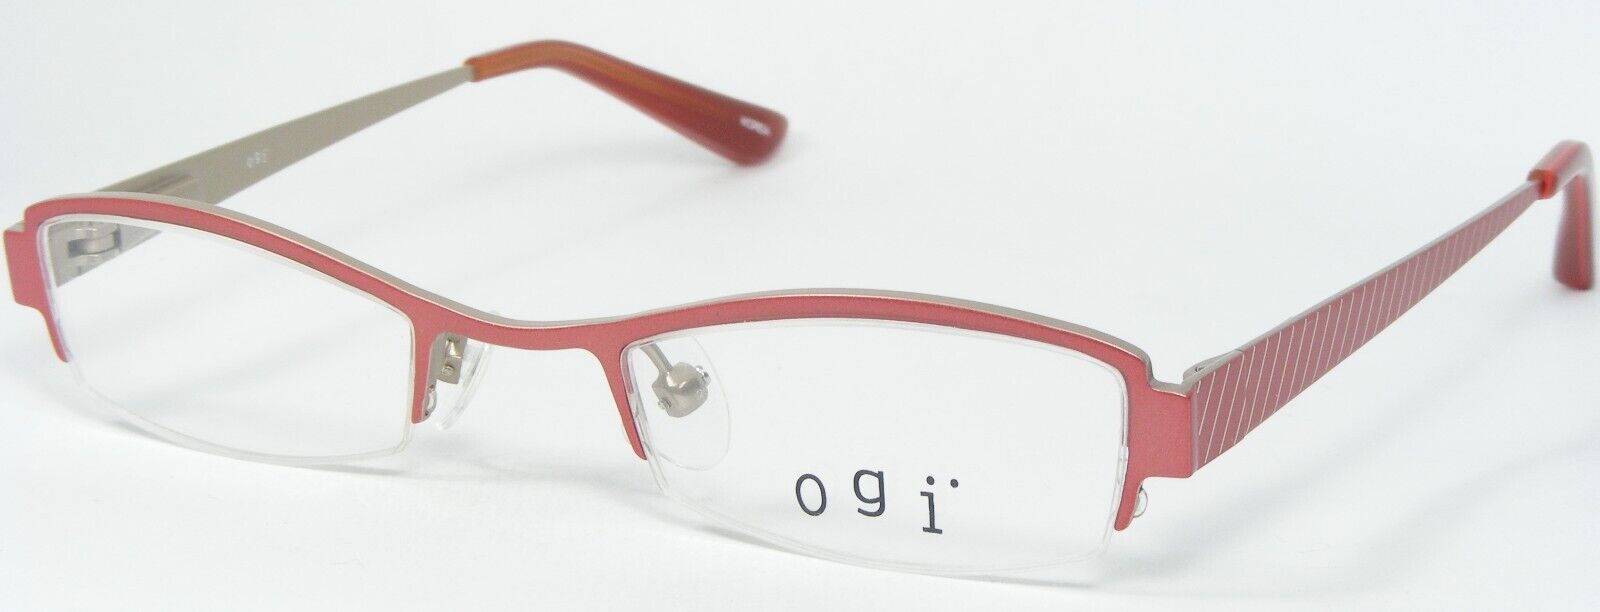 Primary image for Ogi Kids MOD. OK43 688 ROSE /TAN EYEGLASSES GLASSES FRAME 40-18-120mm Korea